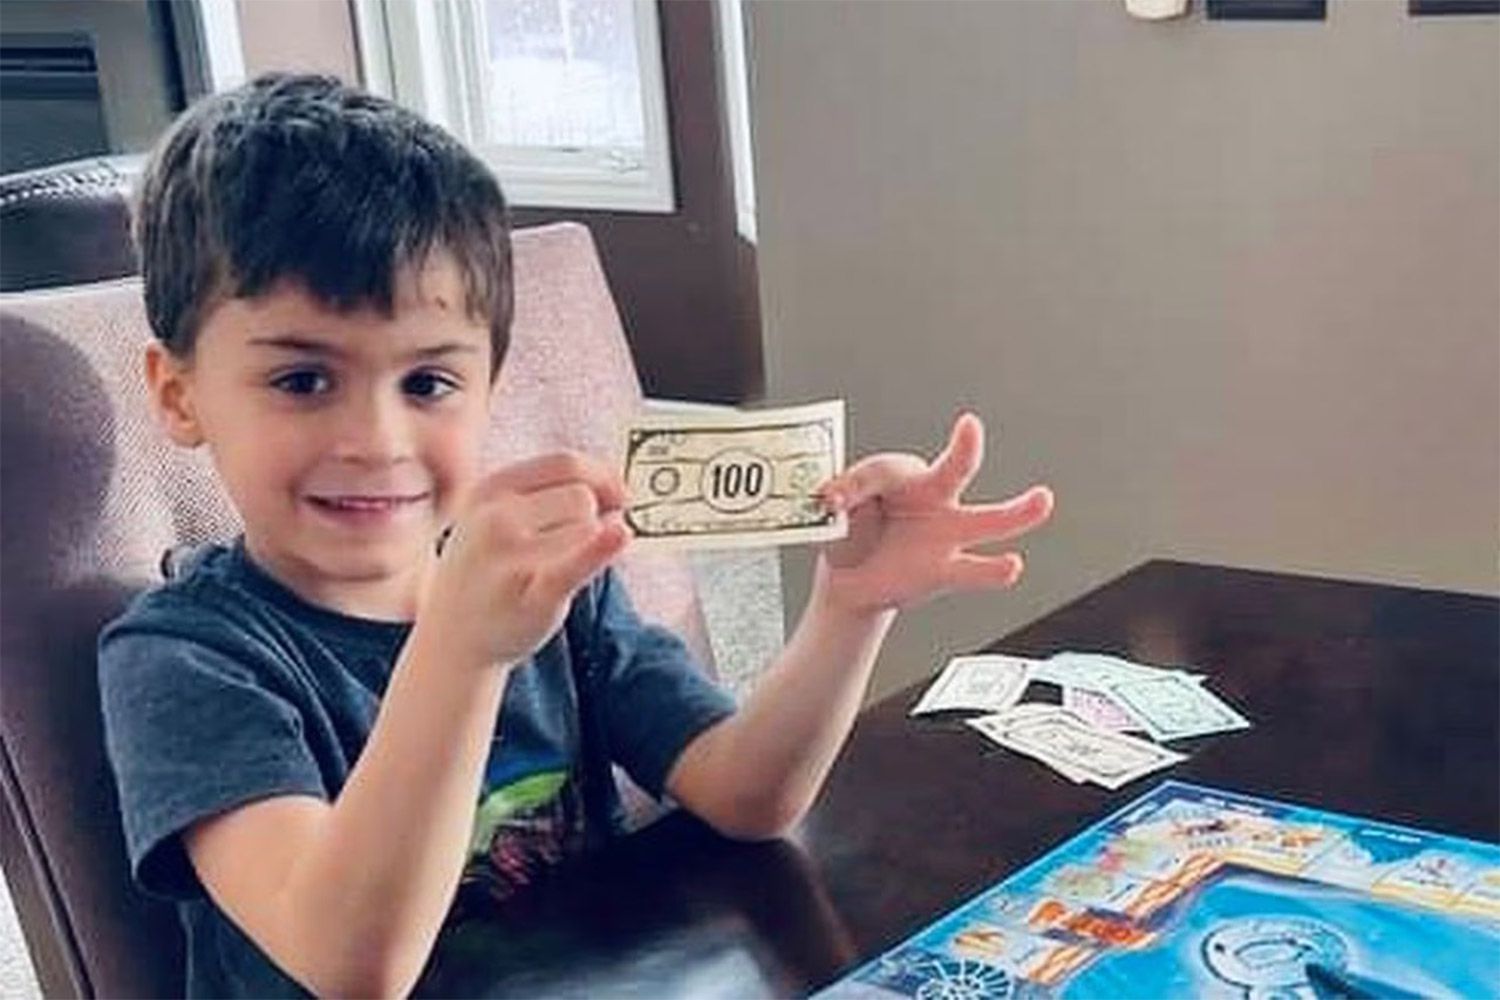 6-letni chłopiec z Michigan zamawia jedzenie za 1000 dolarów na Grubhub za pomocą telefonu swojego taty